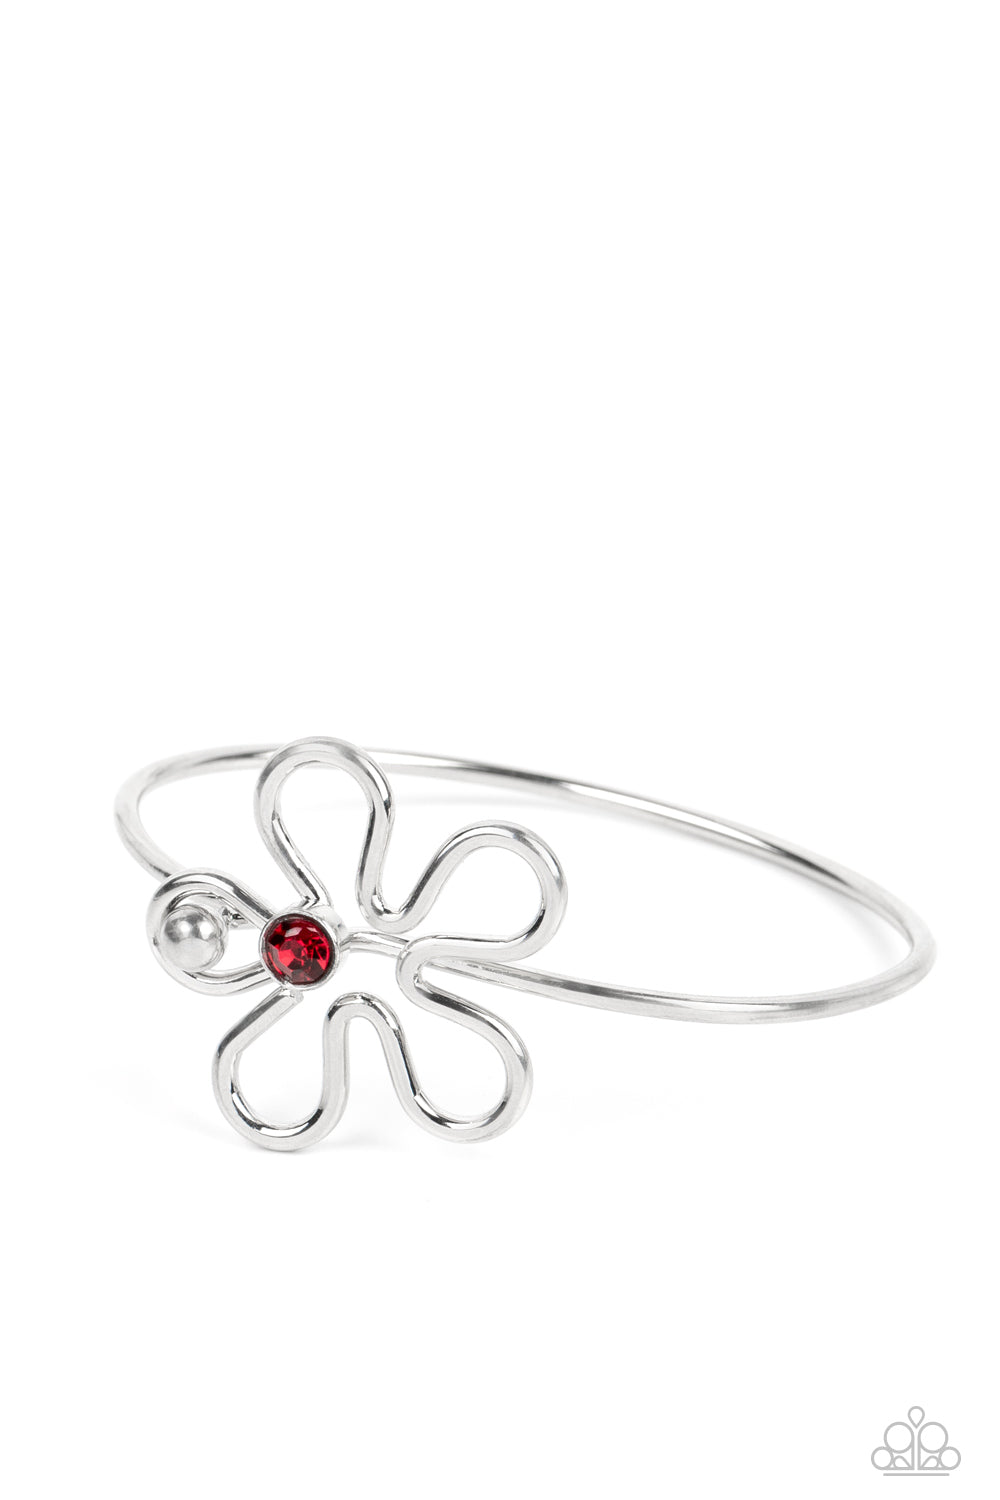 Floral Innovation - red - Paparazzi bracelet